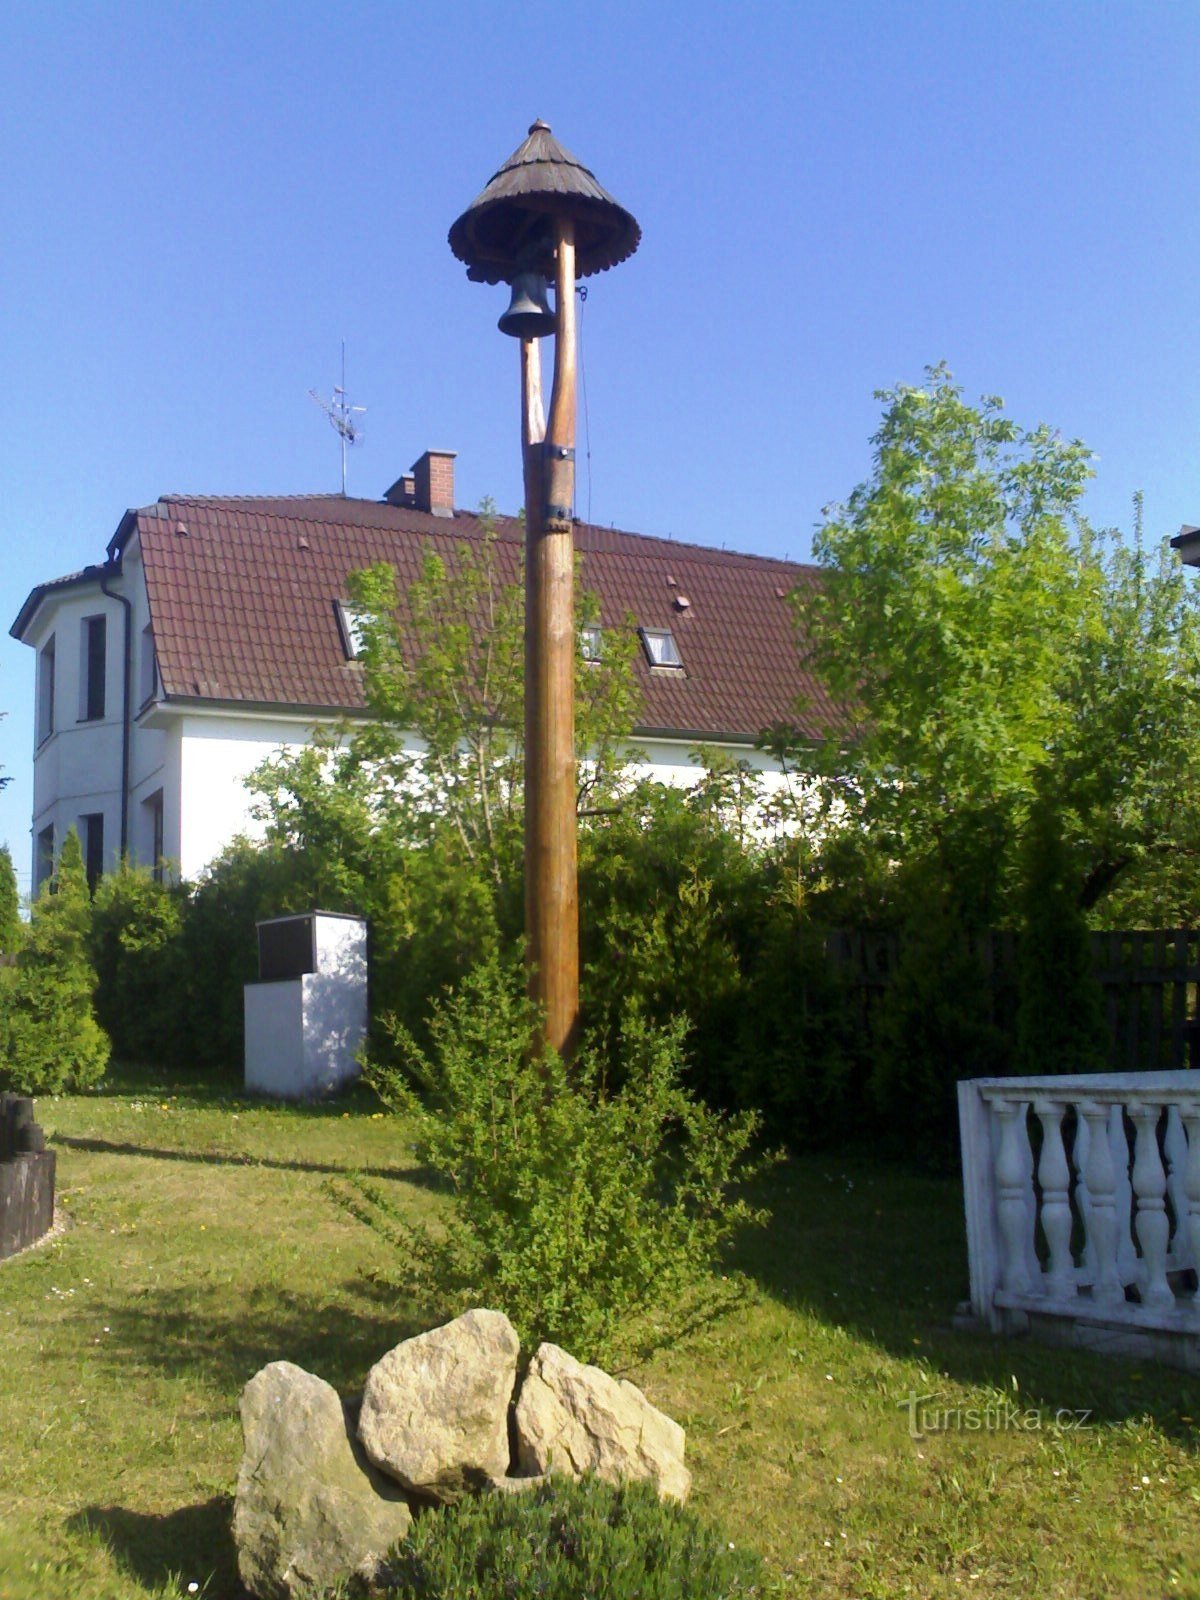 Újezt gần Sezemic